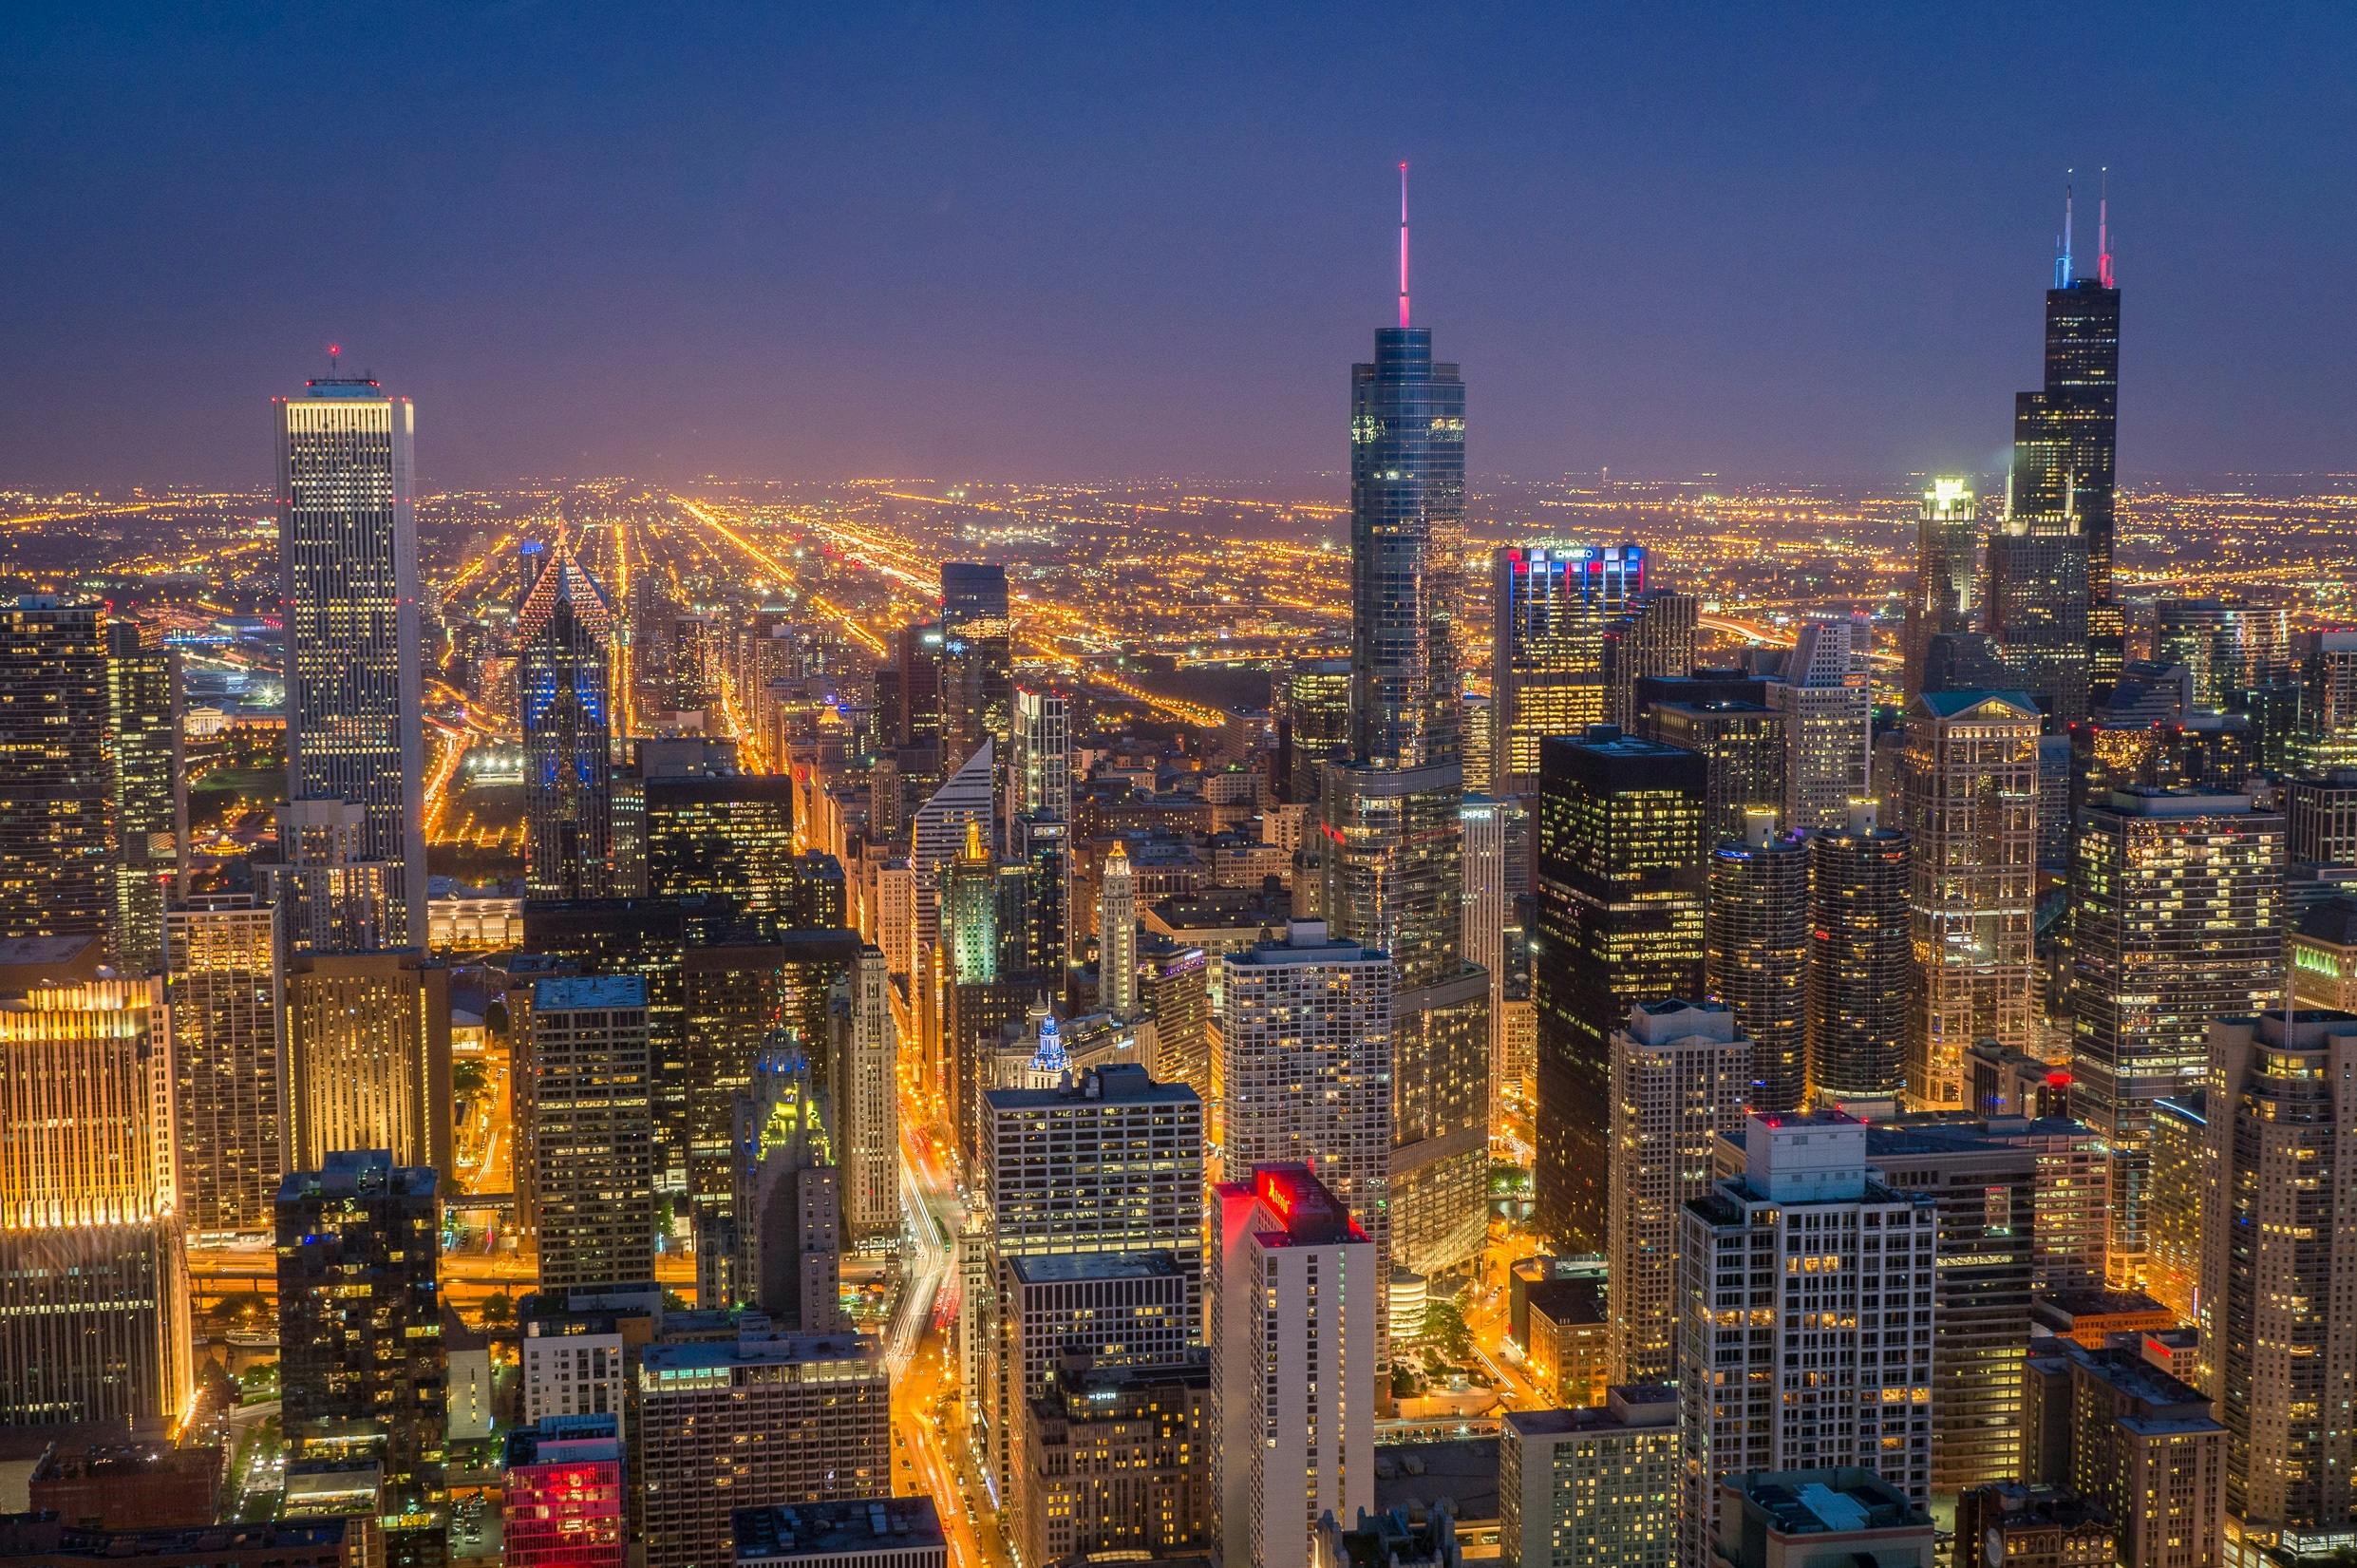 Nachtführung durch Chicago mit Kreuzfahrt